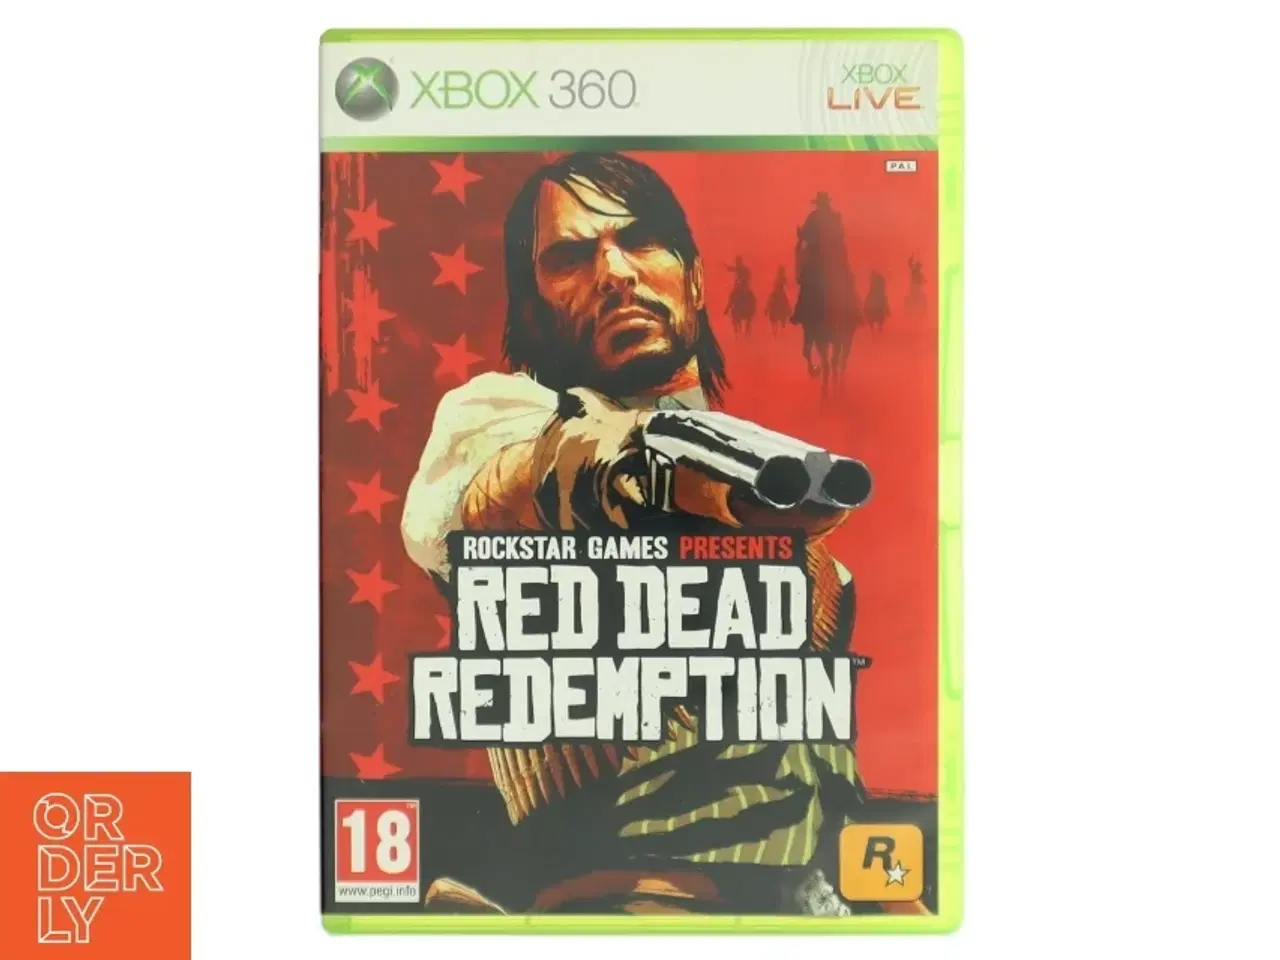 Billede 1 - Red Dead Redemption til Xbox 360 fra Rockstar Games